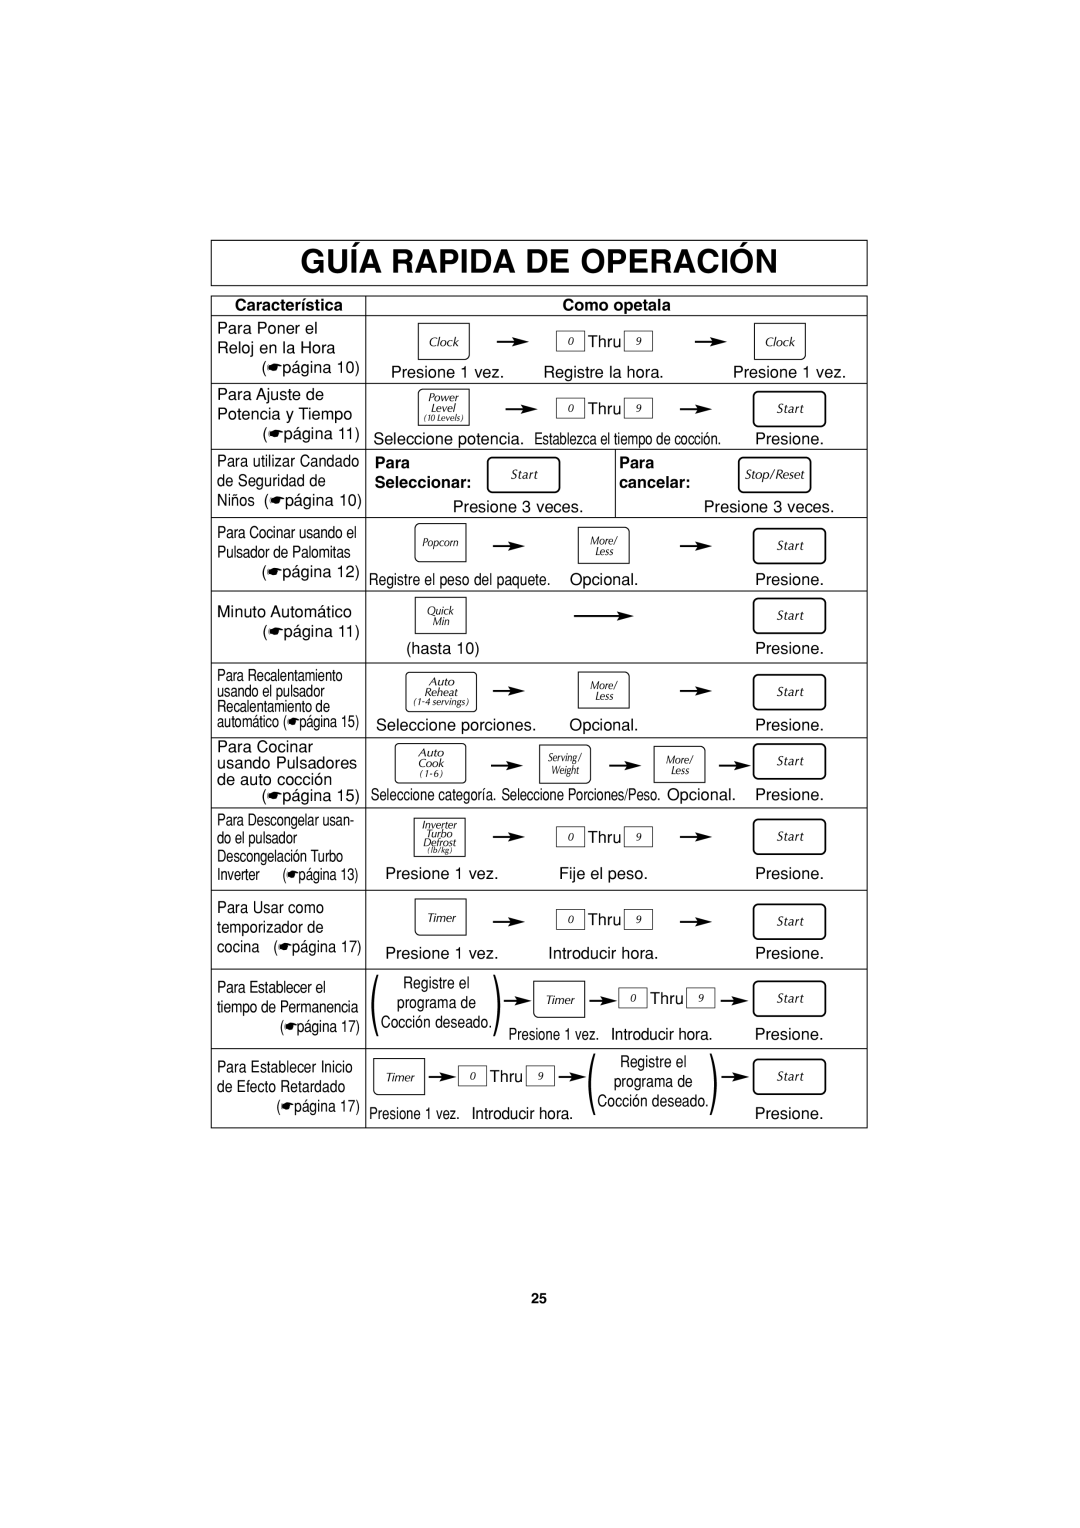 Panasonic NN-S423 Guía Rapida De Operación, Característica, Como opetala, Para, Seleccionar, cancelar 